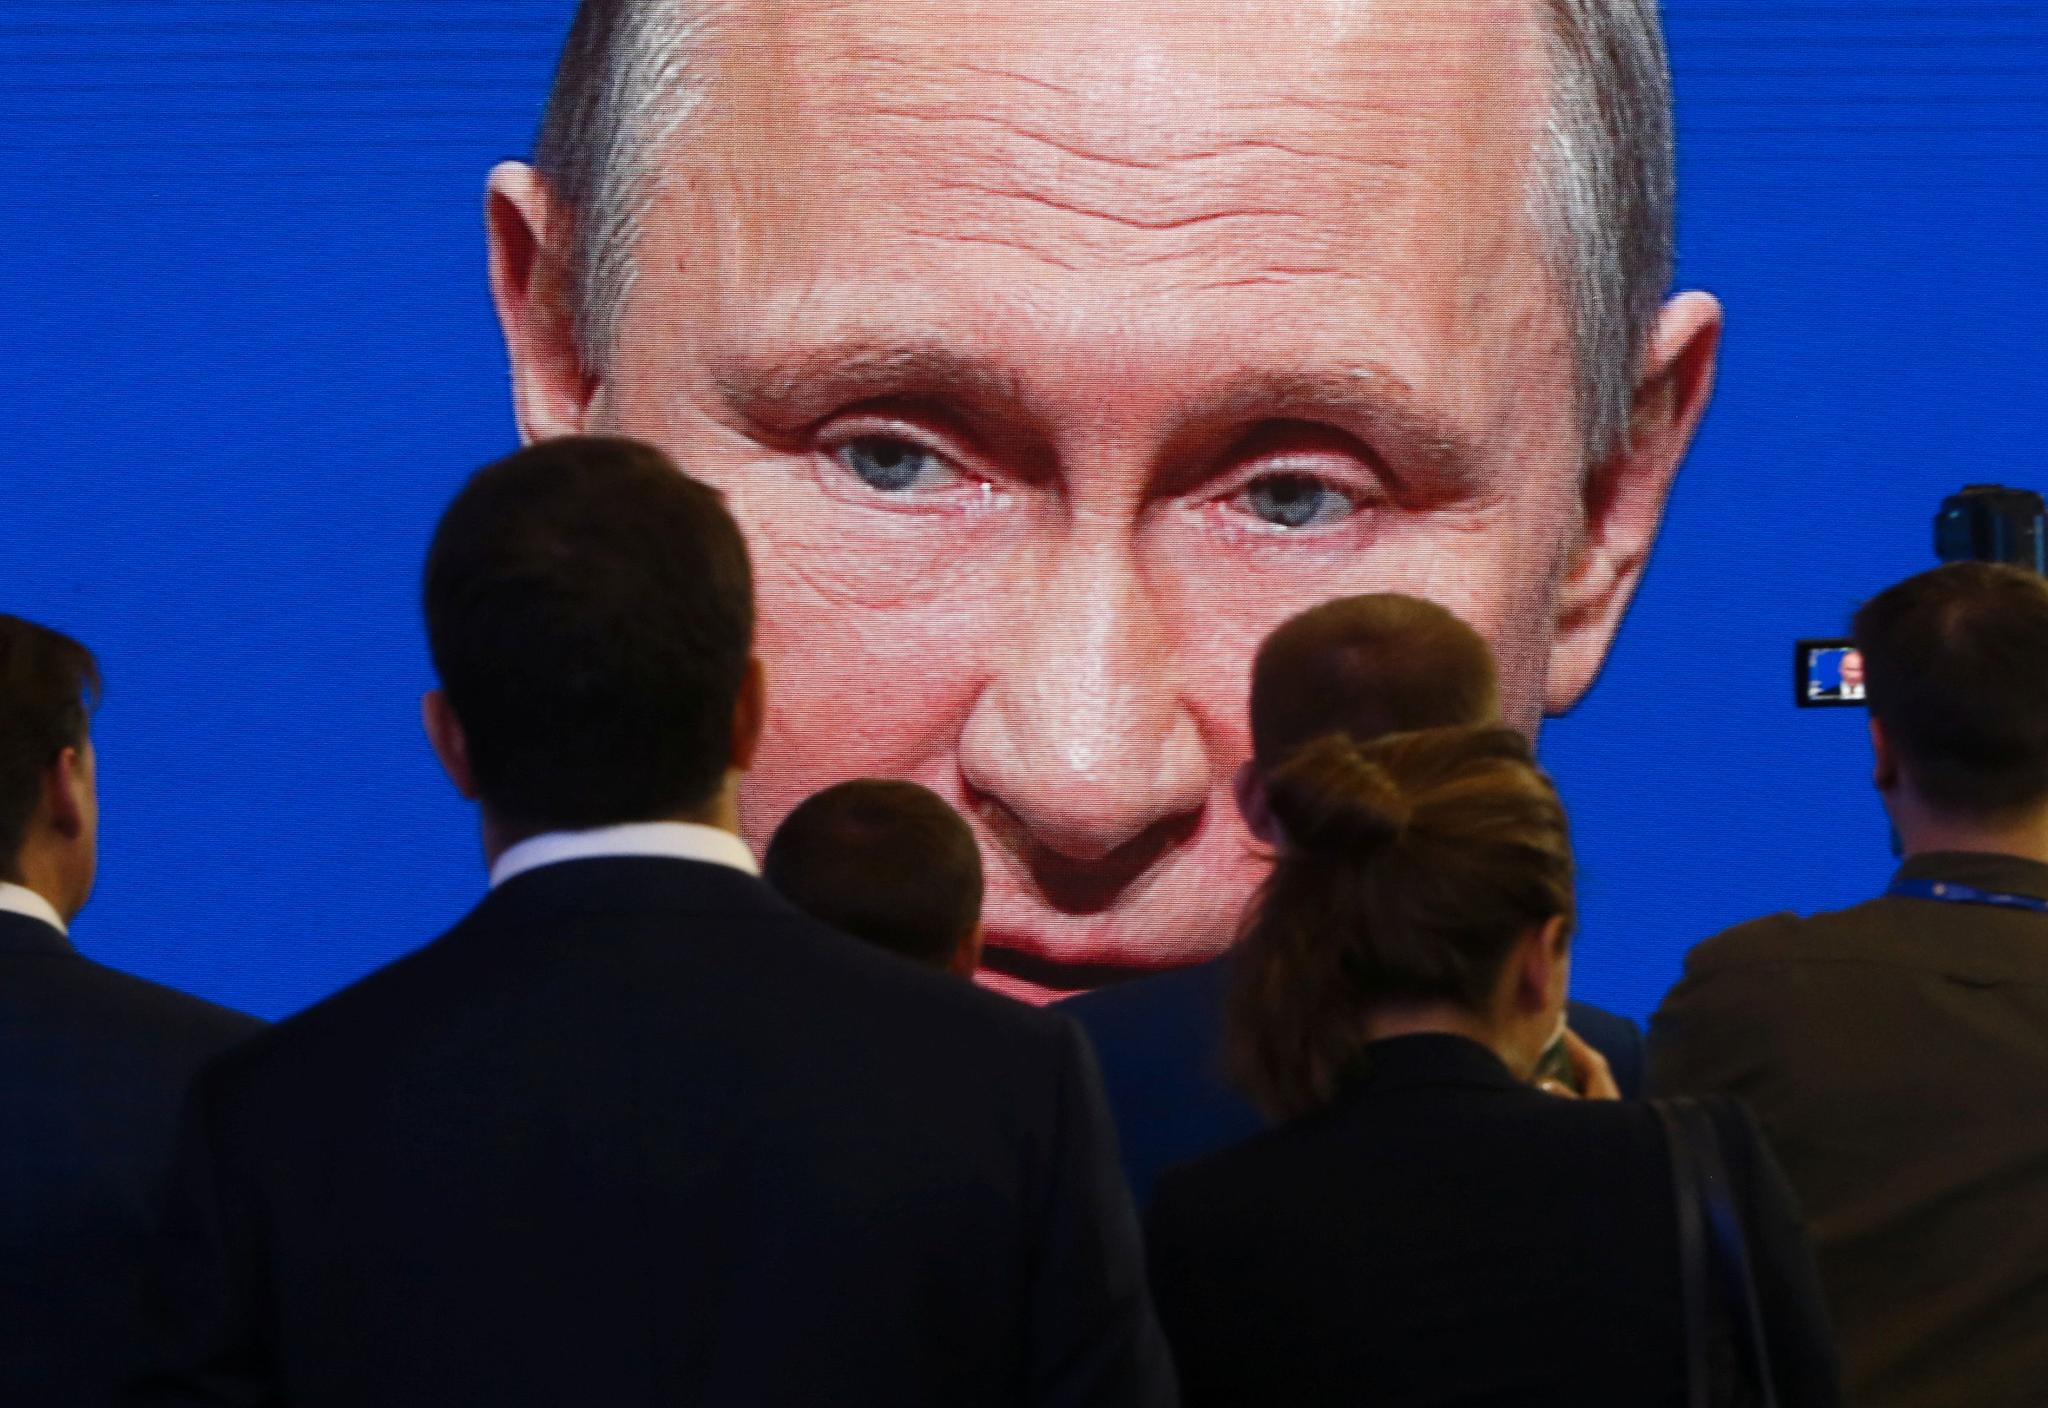 Putin (bildet) gjenoppfinner historien på måter som gjør Trump til en lille-Putin, skriver kronikkforfatteren. Bildet er fra 2017.